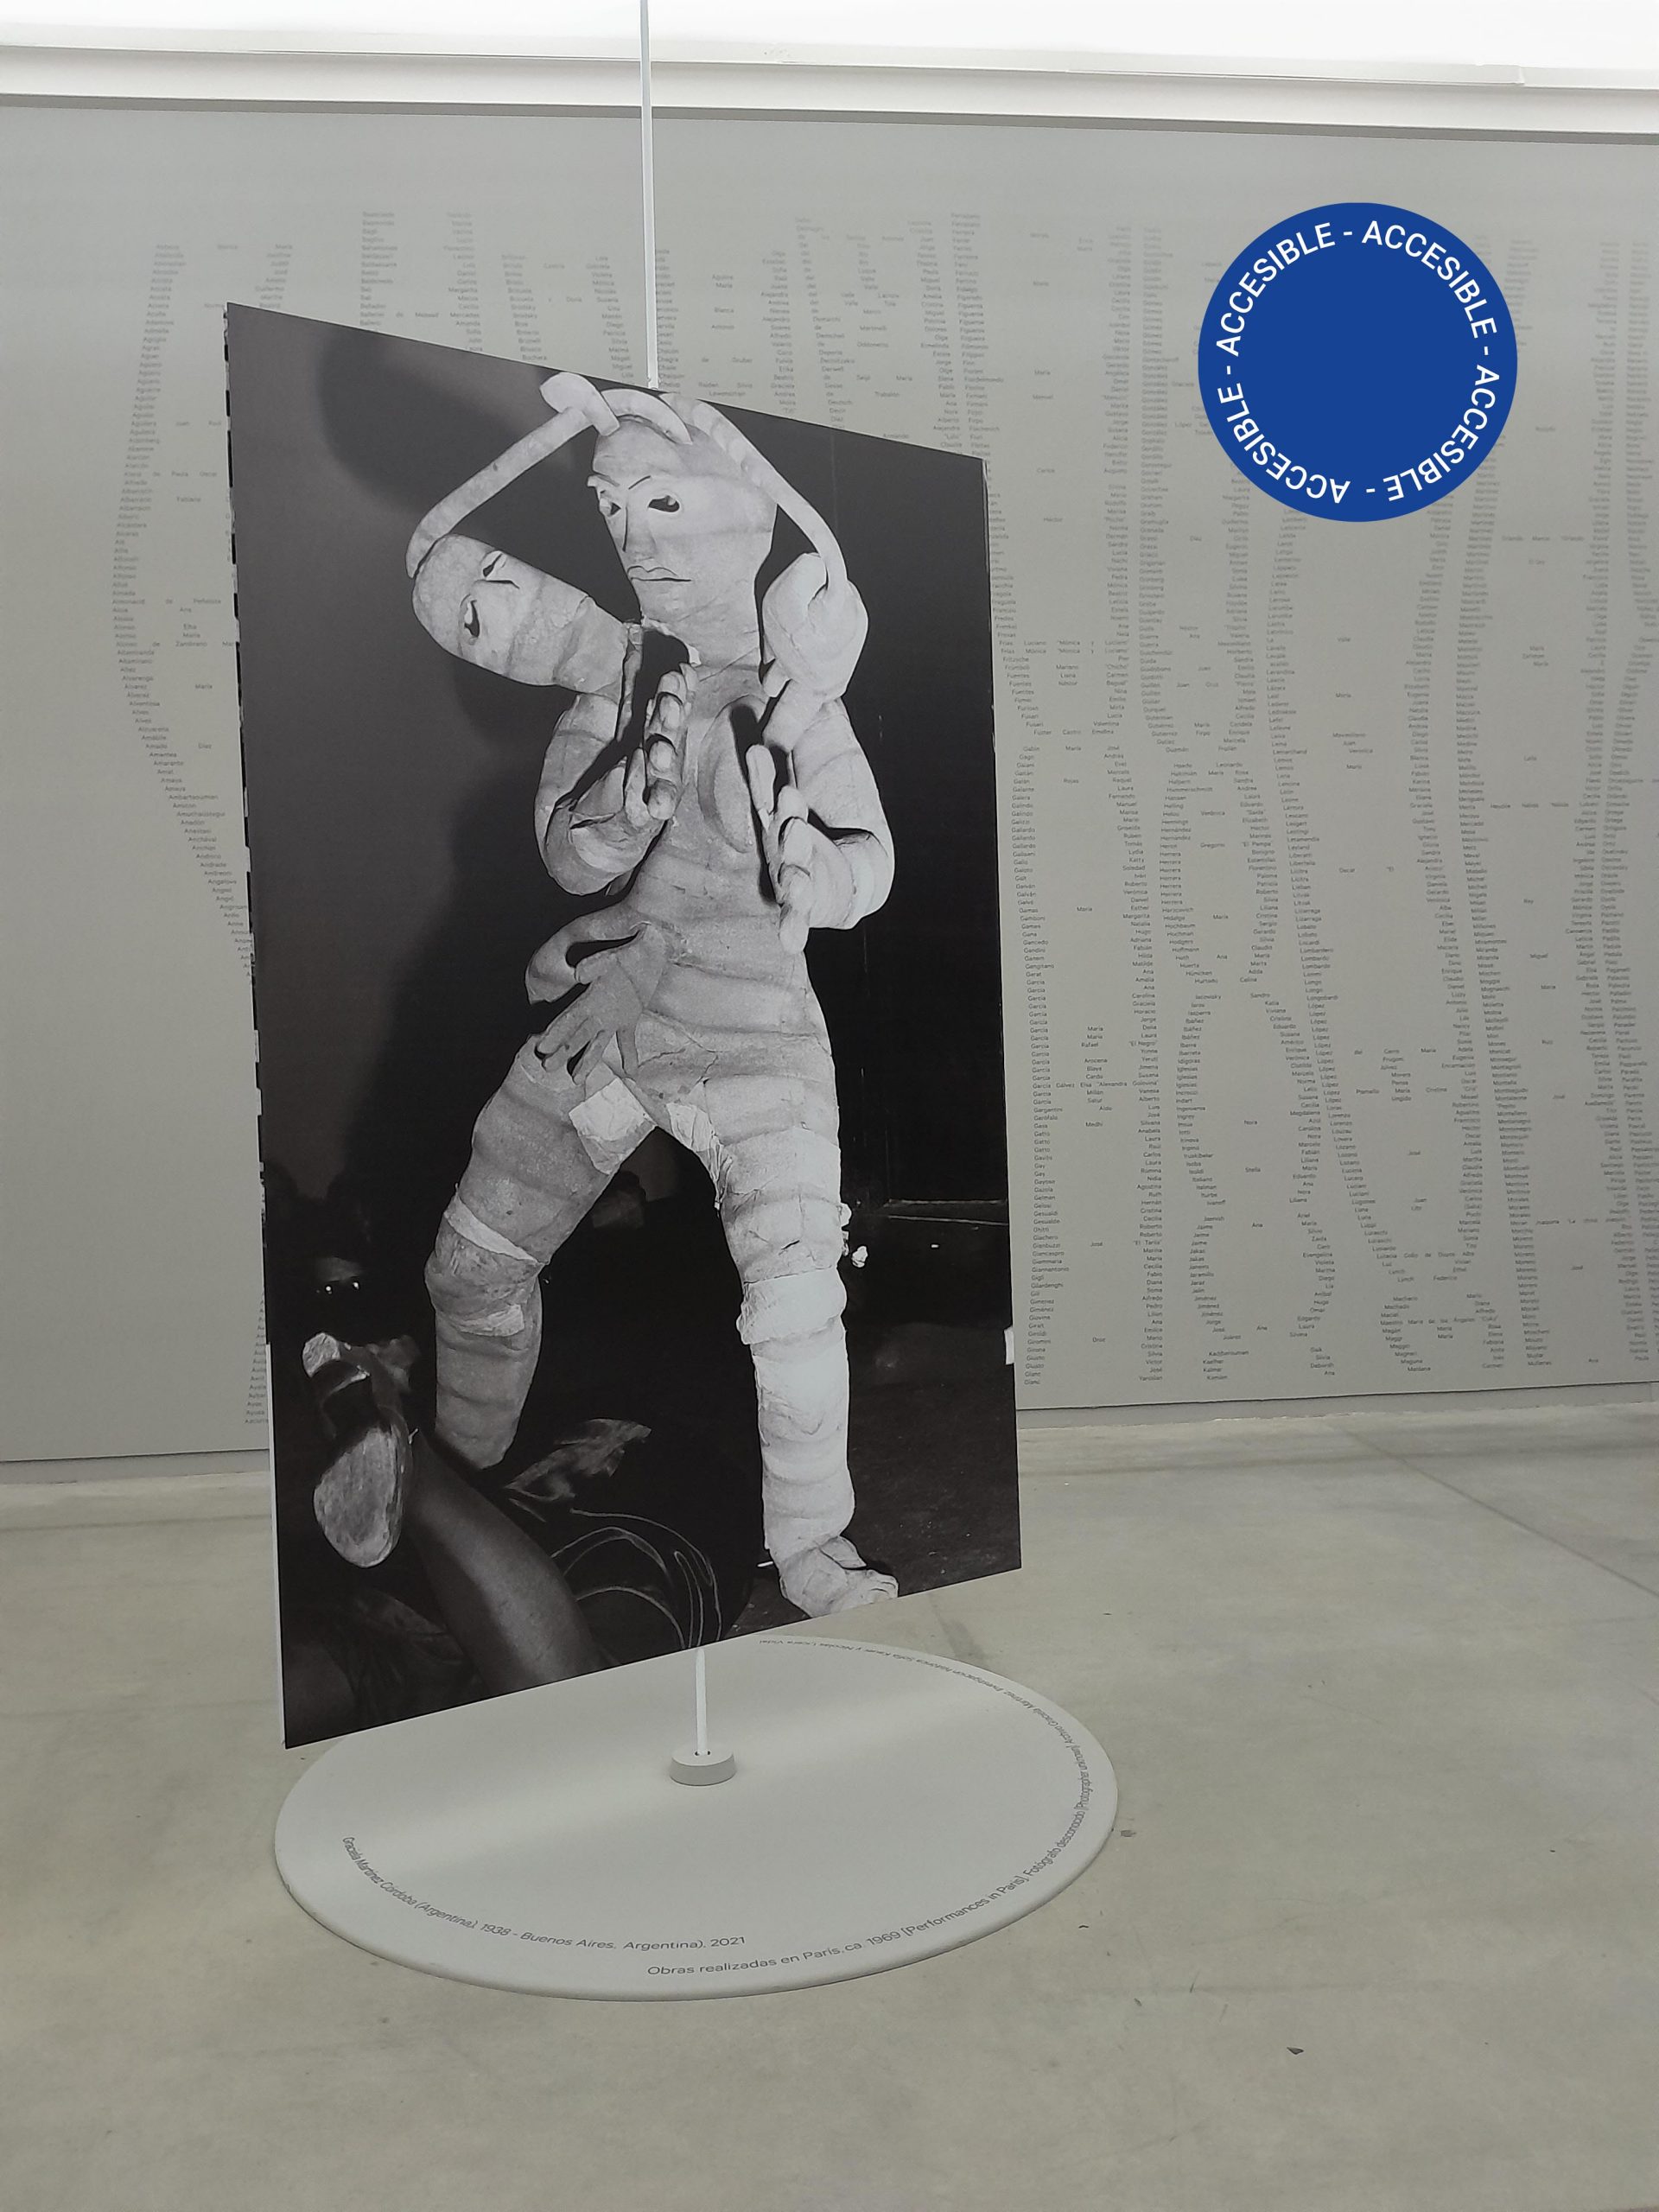 Imagen muestra el interior de la sala de la exposición Danza actual donde se ve un panel-soporte de una fotografía analógica blanco y negro de gran formato protagonizada por una figura vestida con un traje voluminoso de dos cabezas.